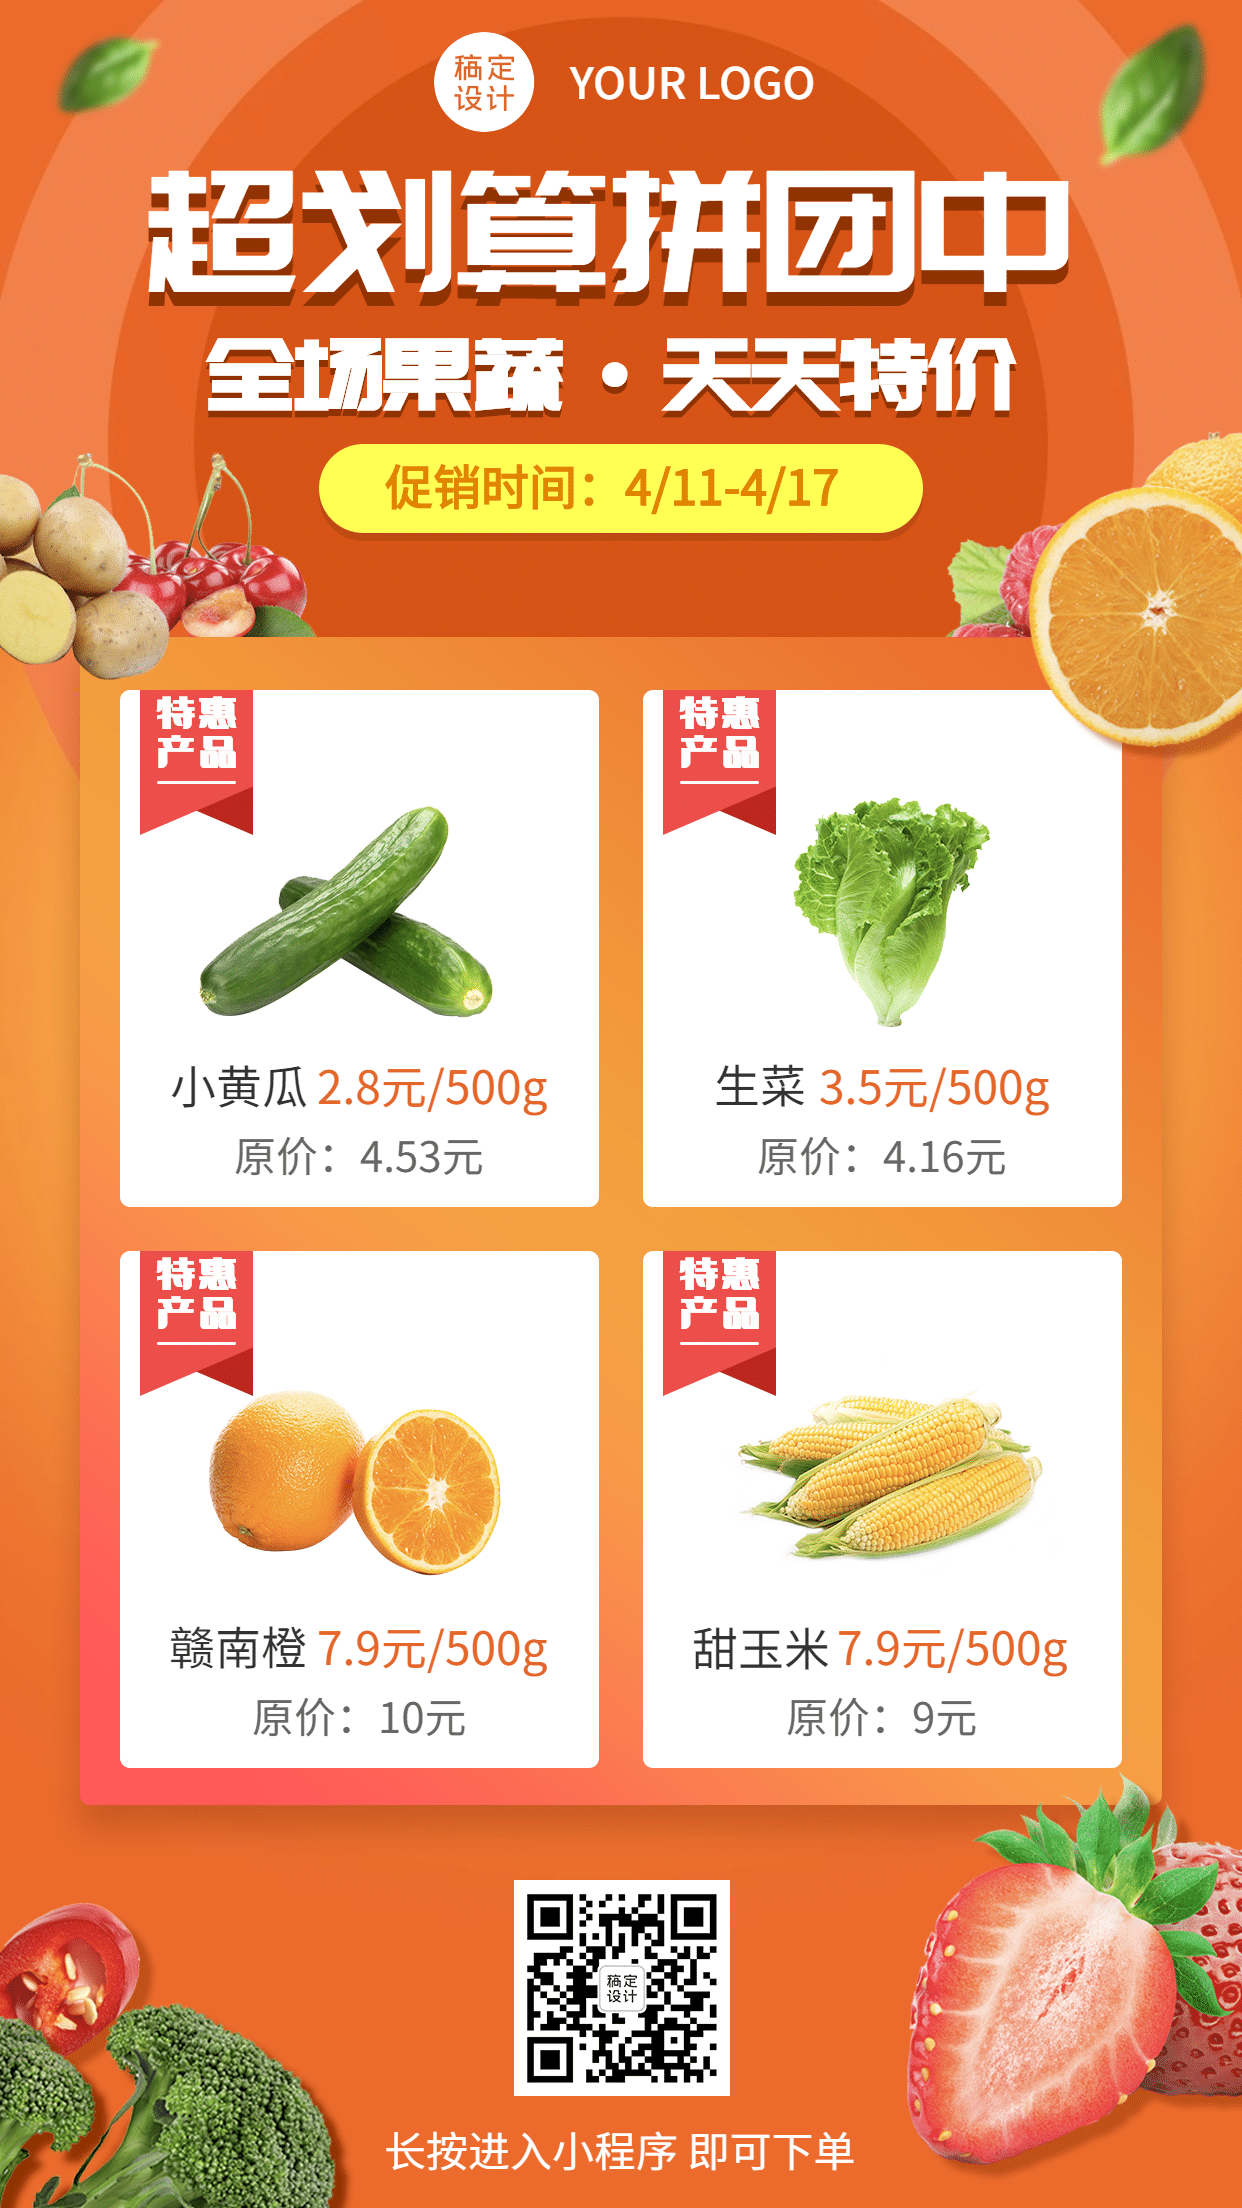 生鲜水果蔬菜产品展示手机海报